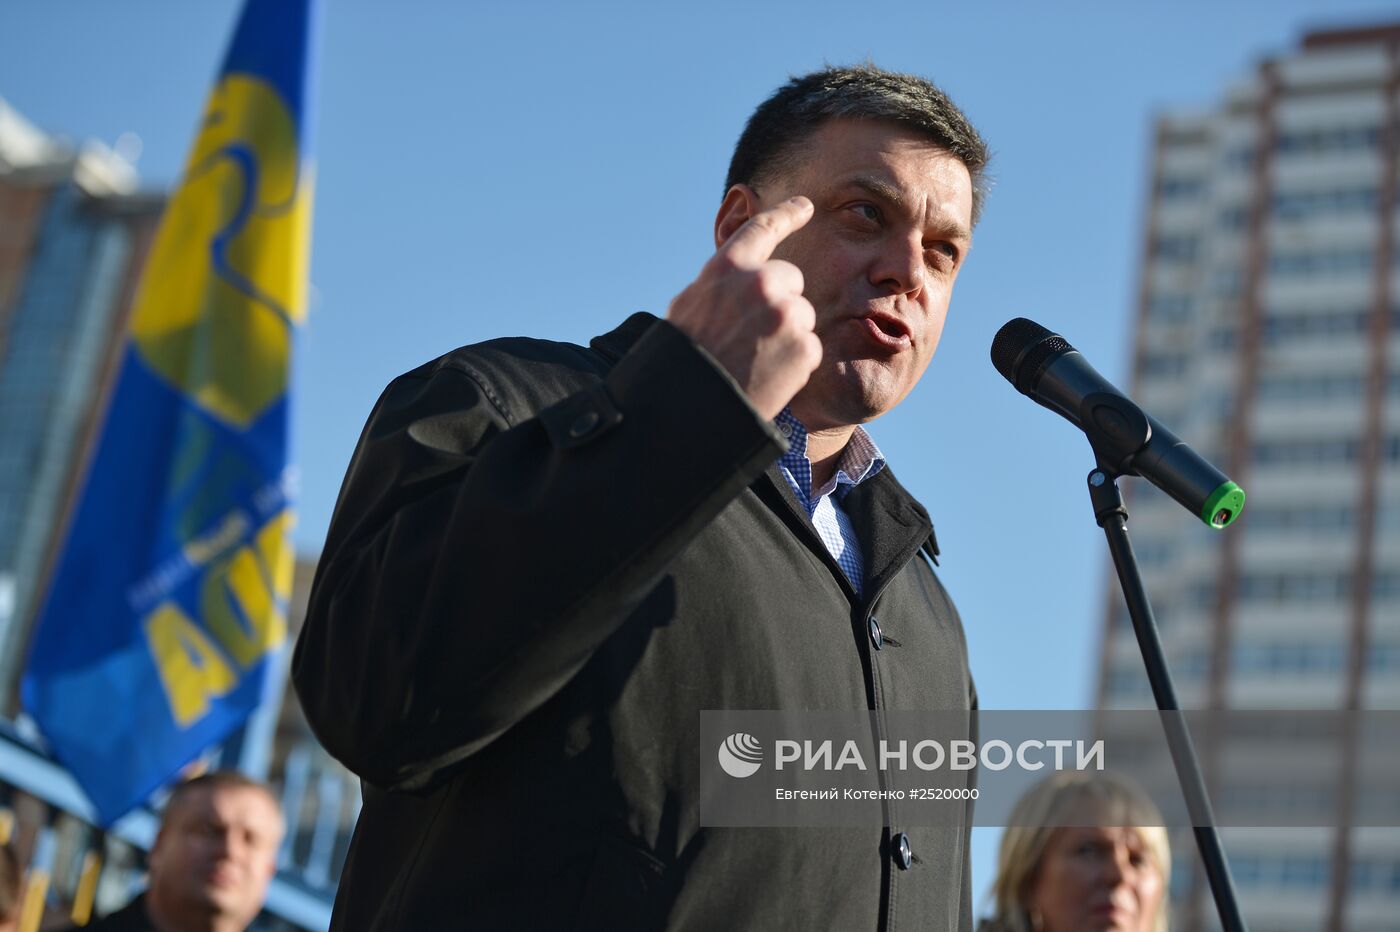 Активисты объединения "Свобода" провели акцию протеста у здания ЦИК в Киеве